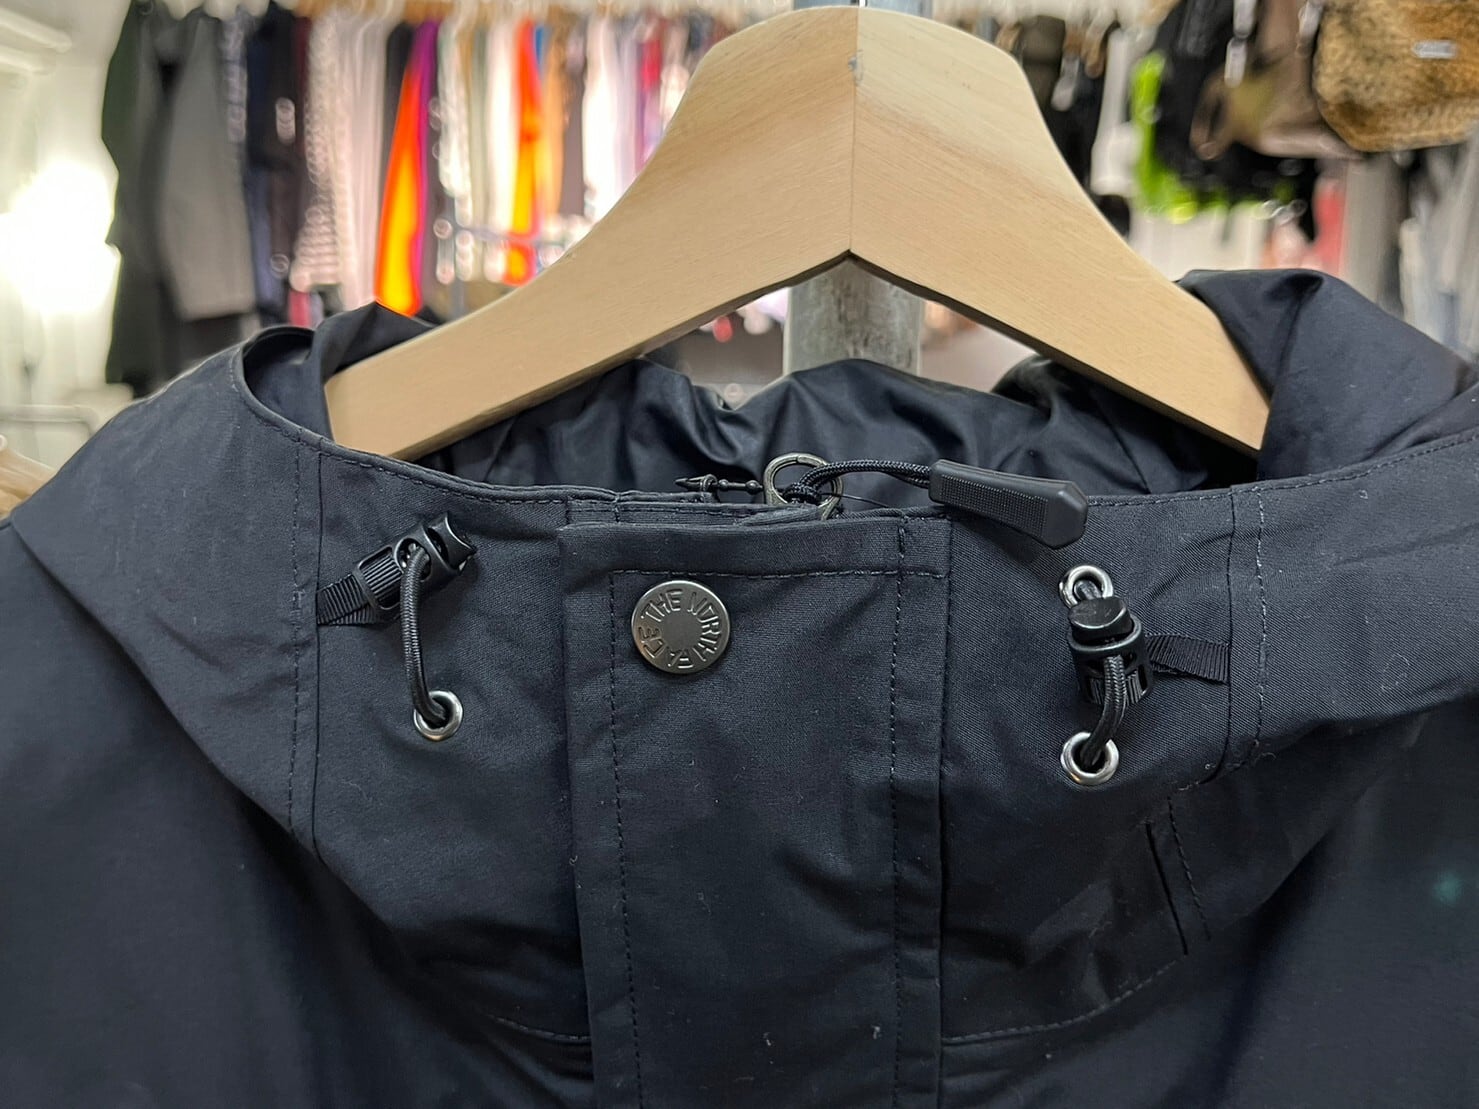 Supreme TNF Cargo Vest Black Small 新品